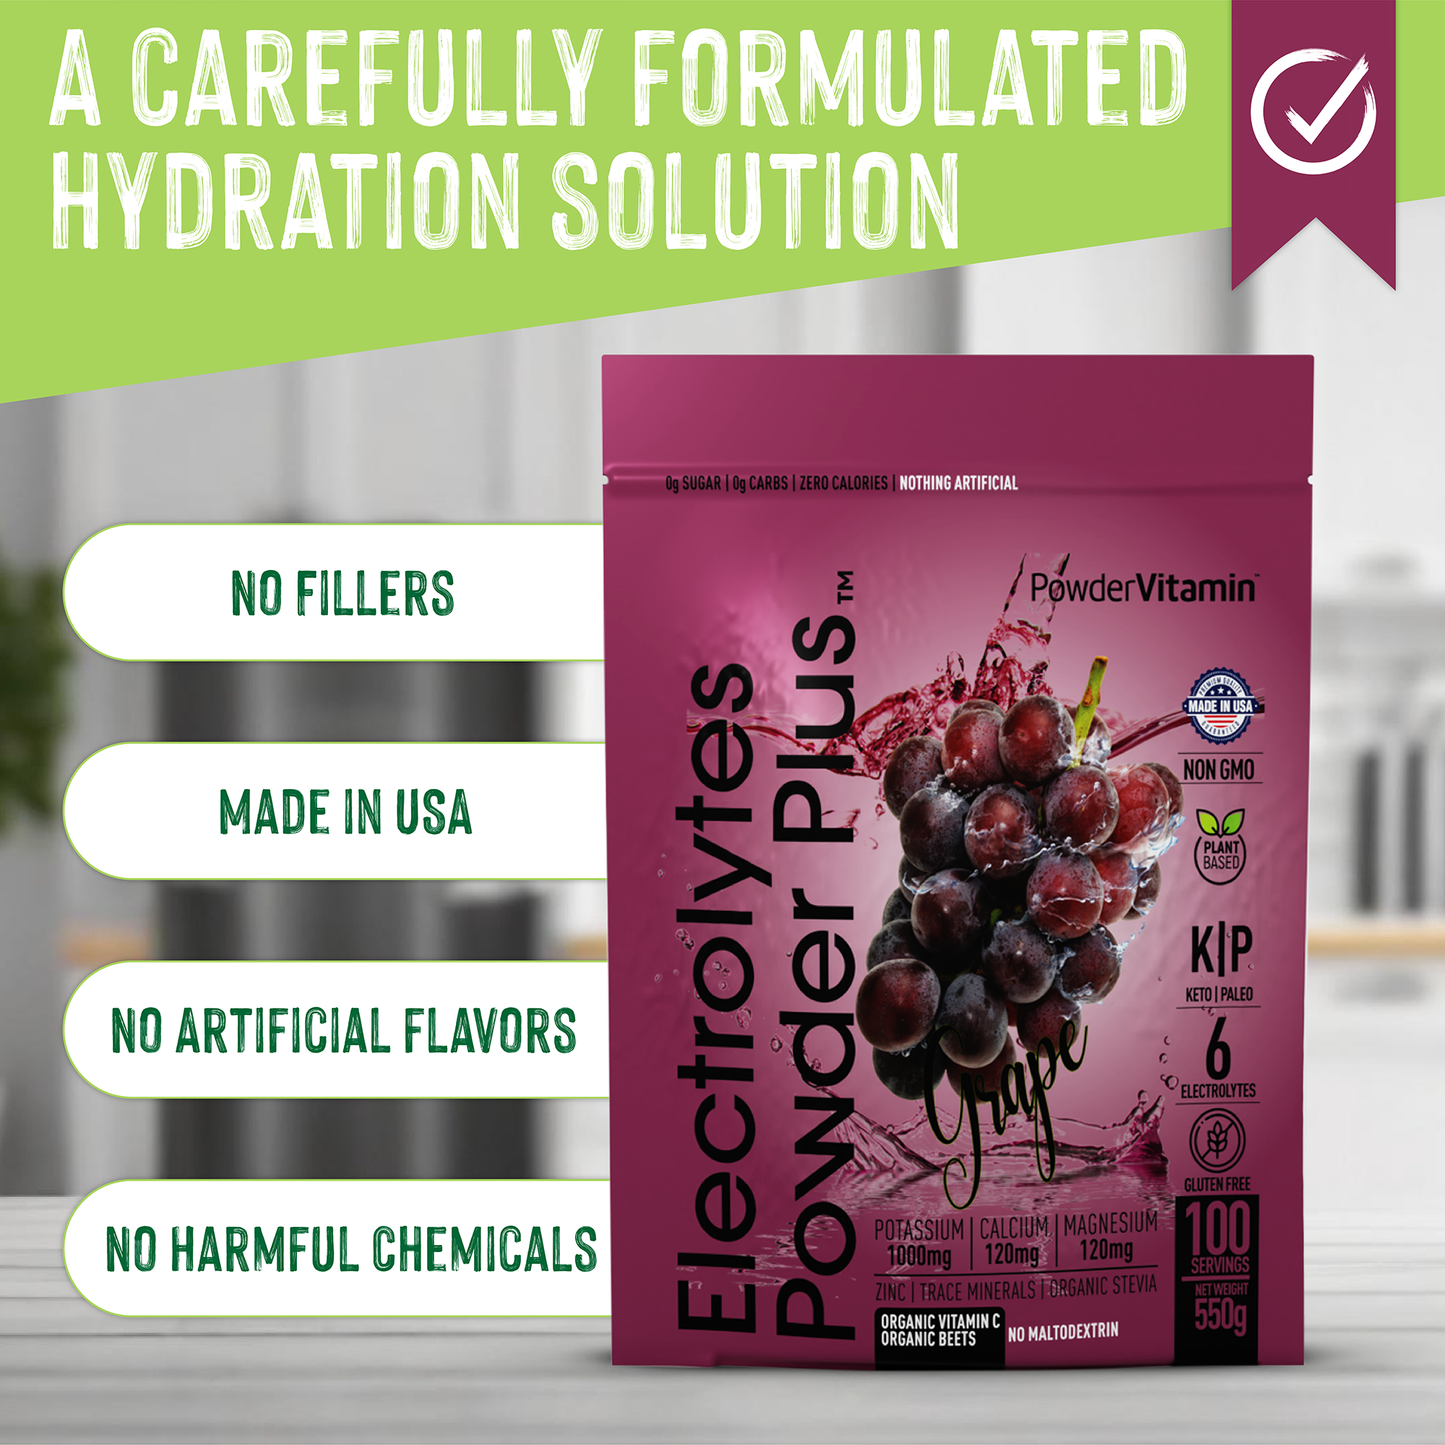 Grape Electrolytes Powder 100 Servings